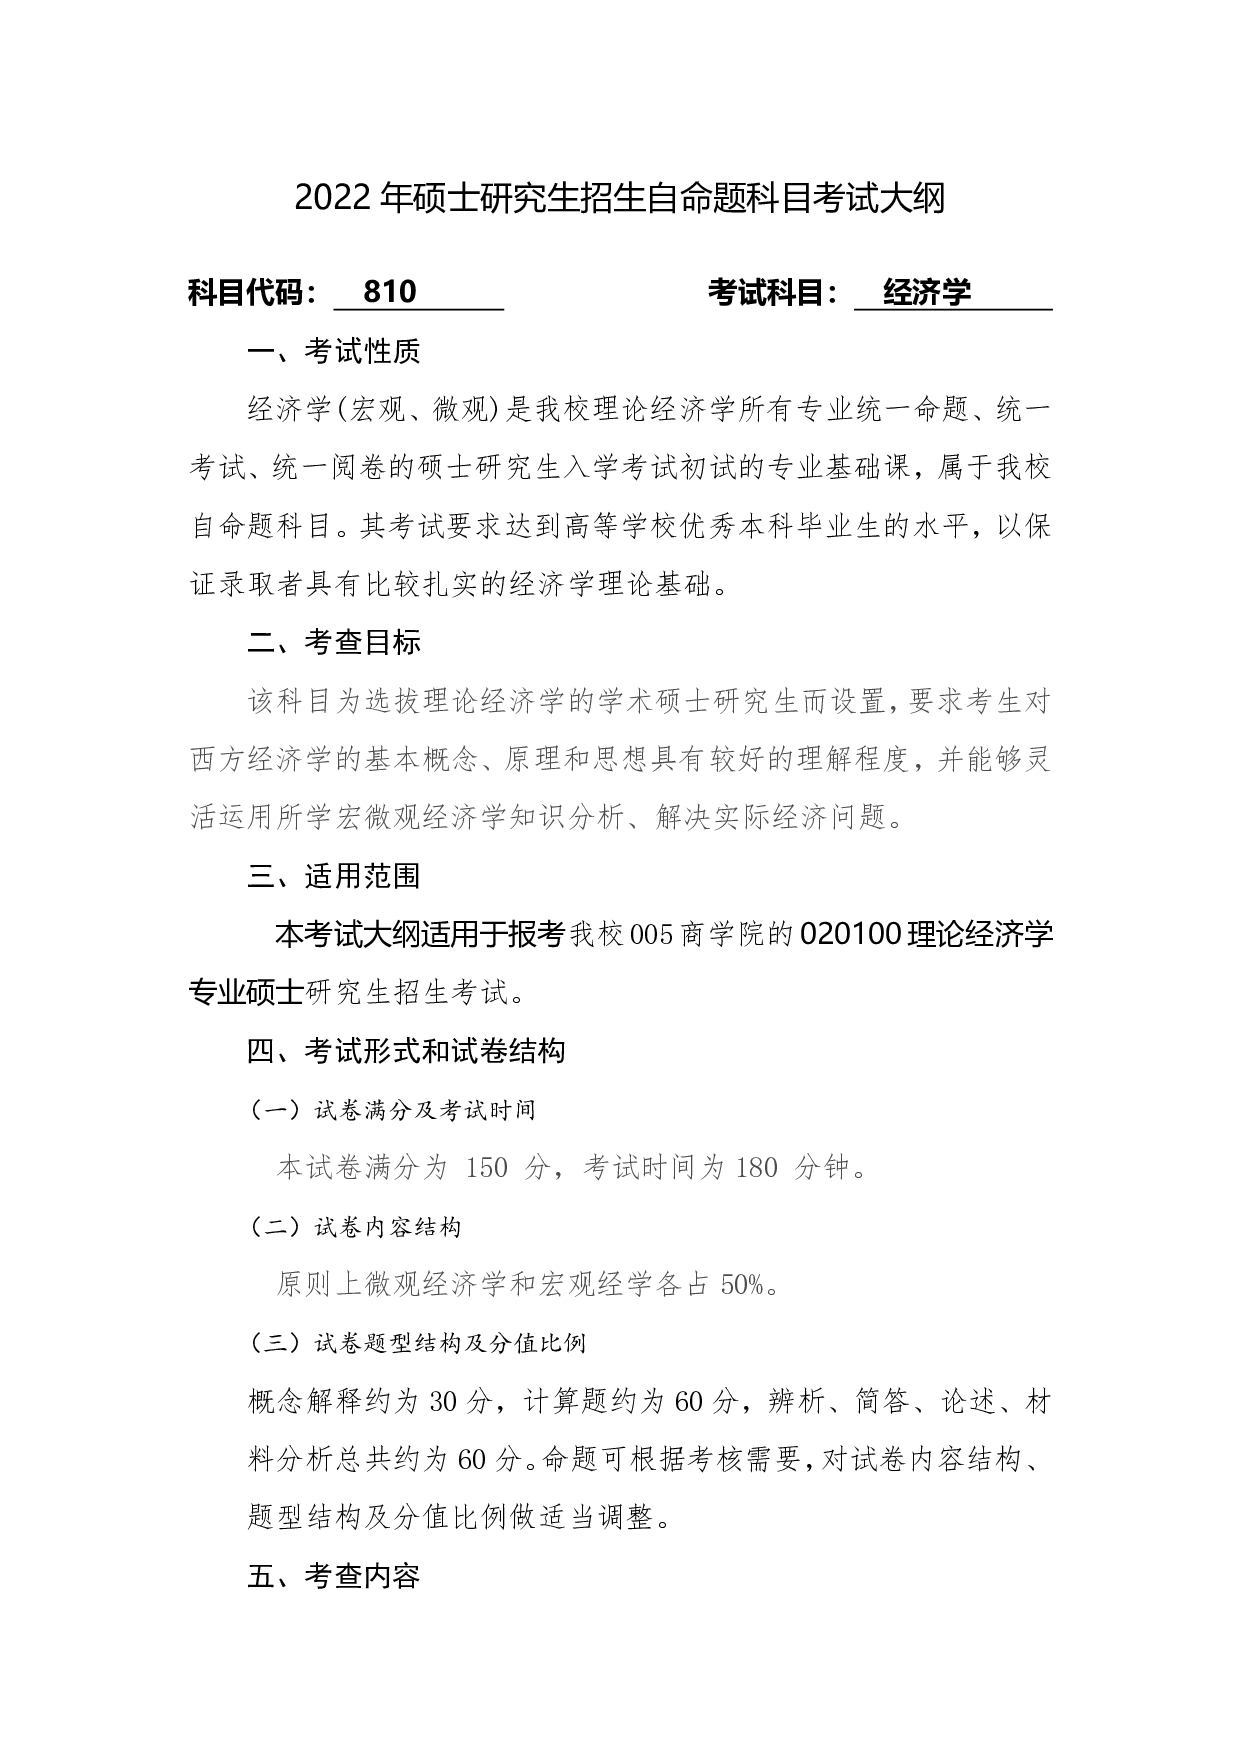 2022考研大纲：桂林电子科技大学2022年考研 810经济学 考试大纲第1页